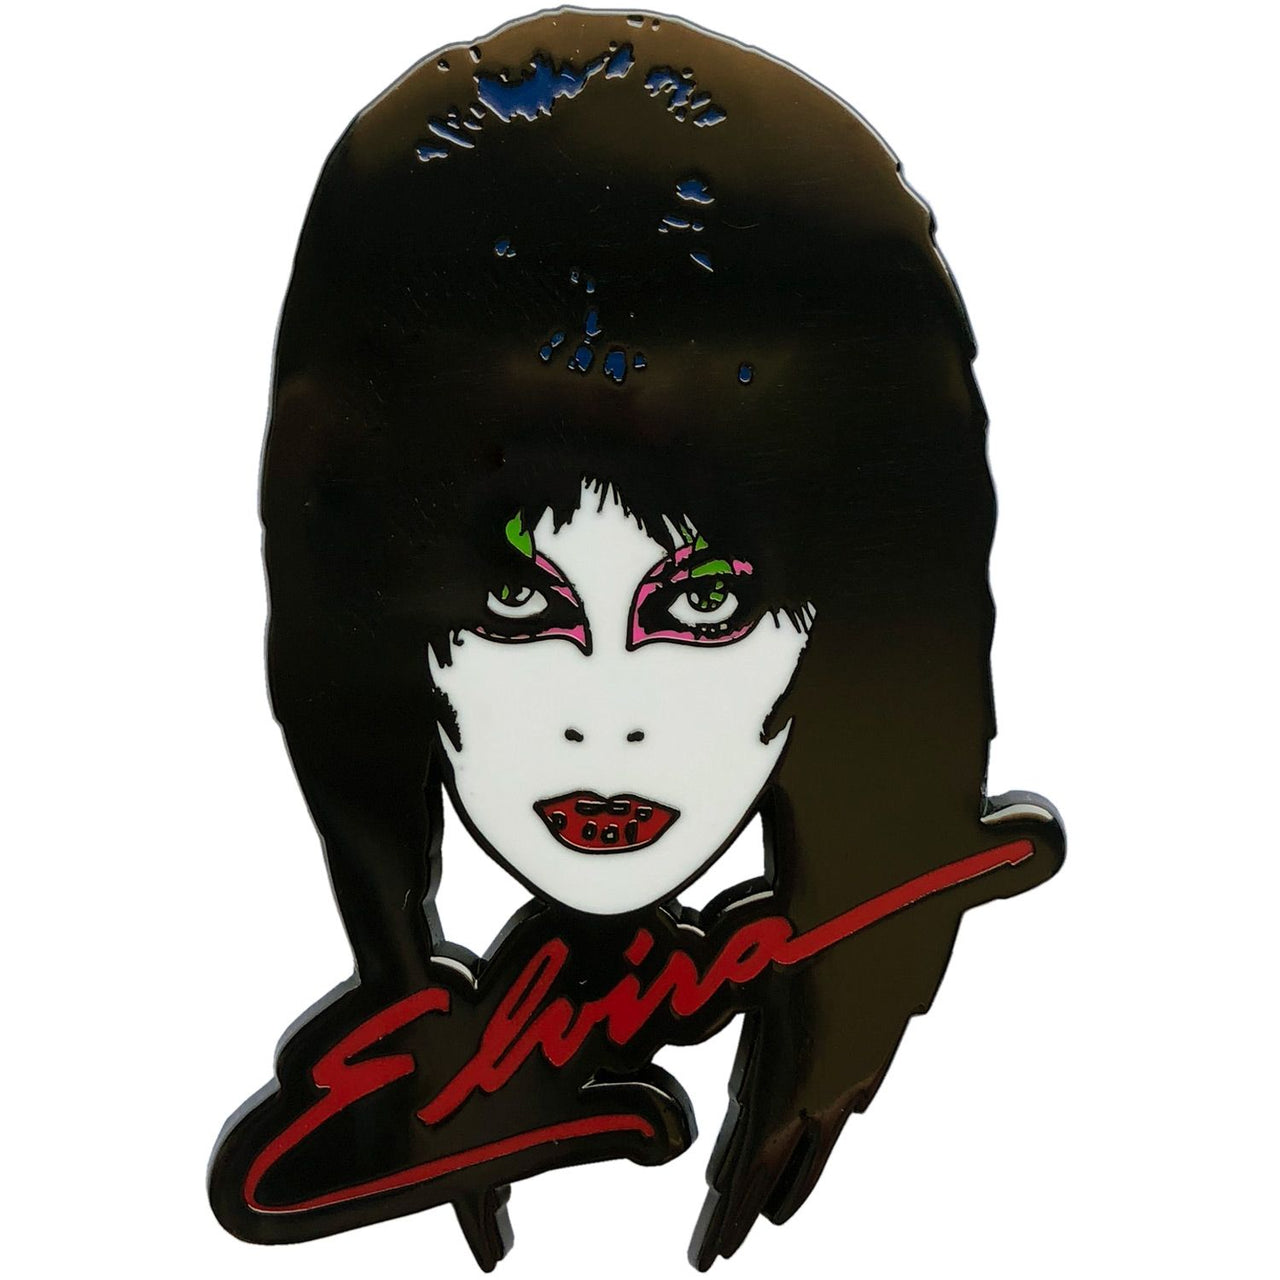 Elvira 80's Enamel Pin - Kreepsville